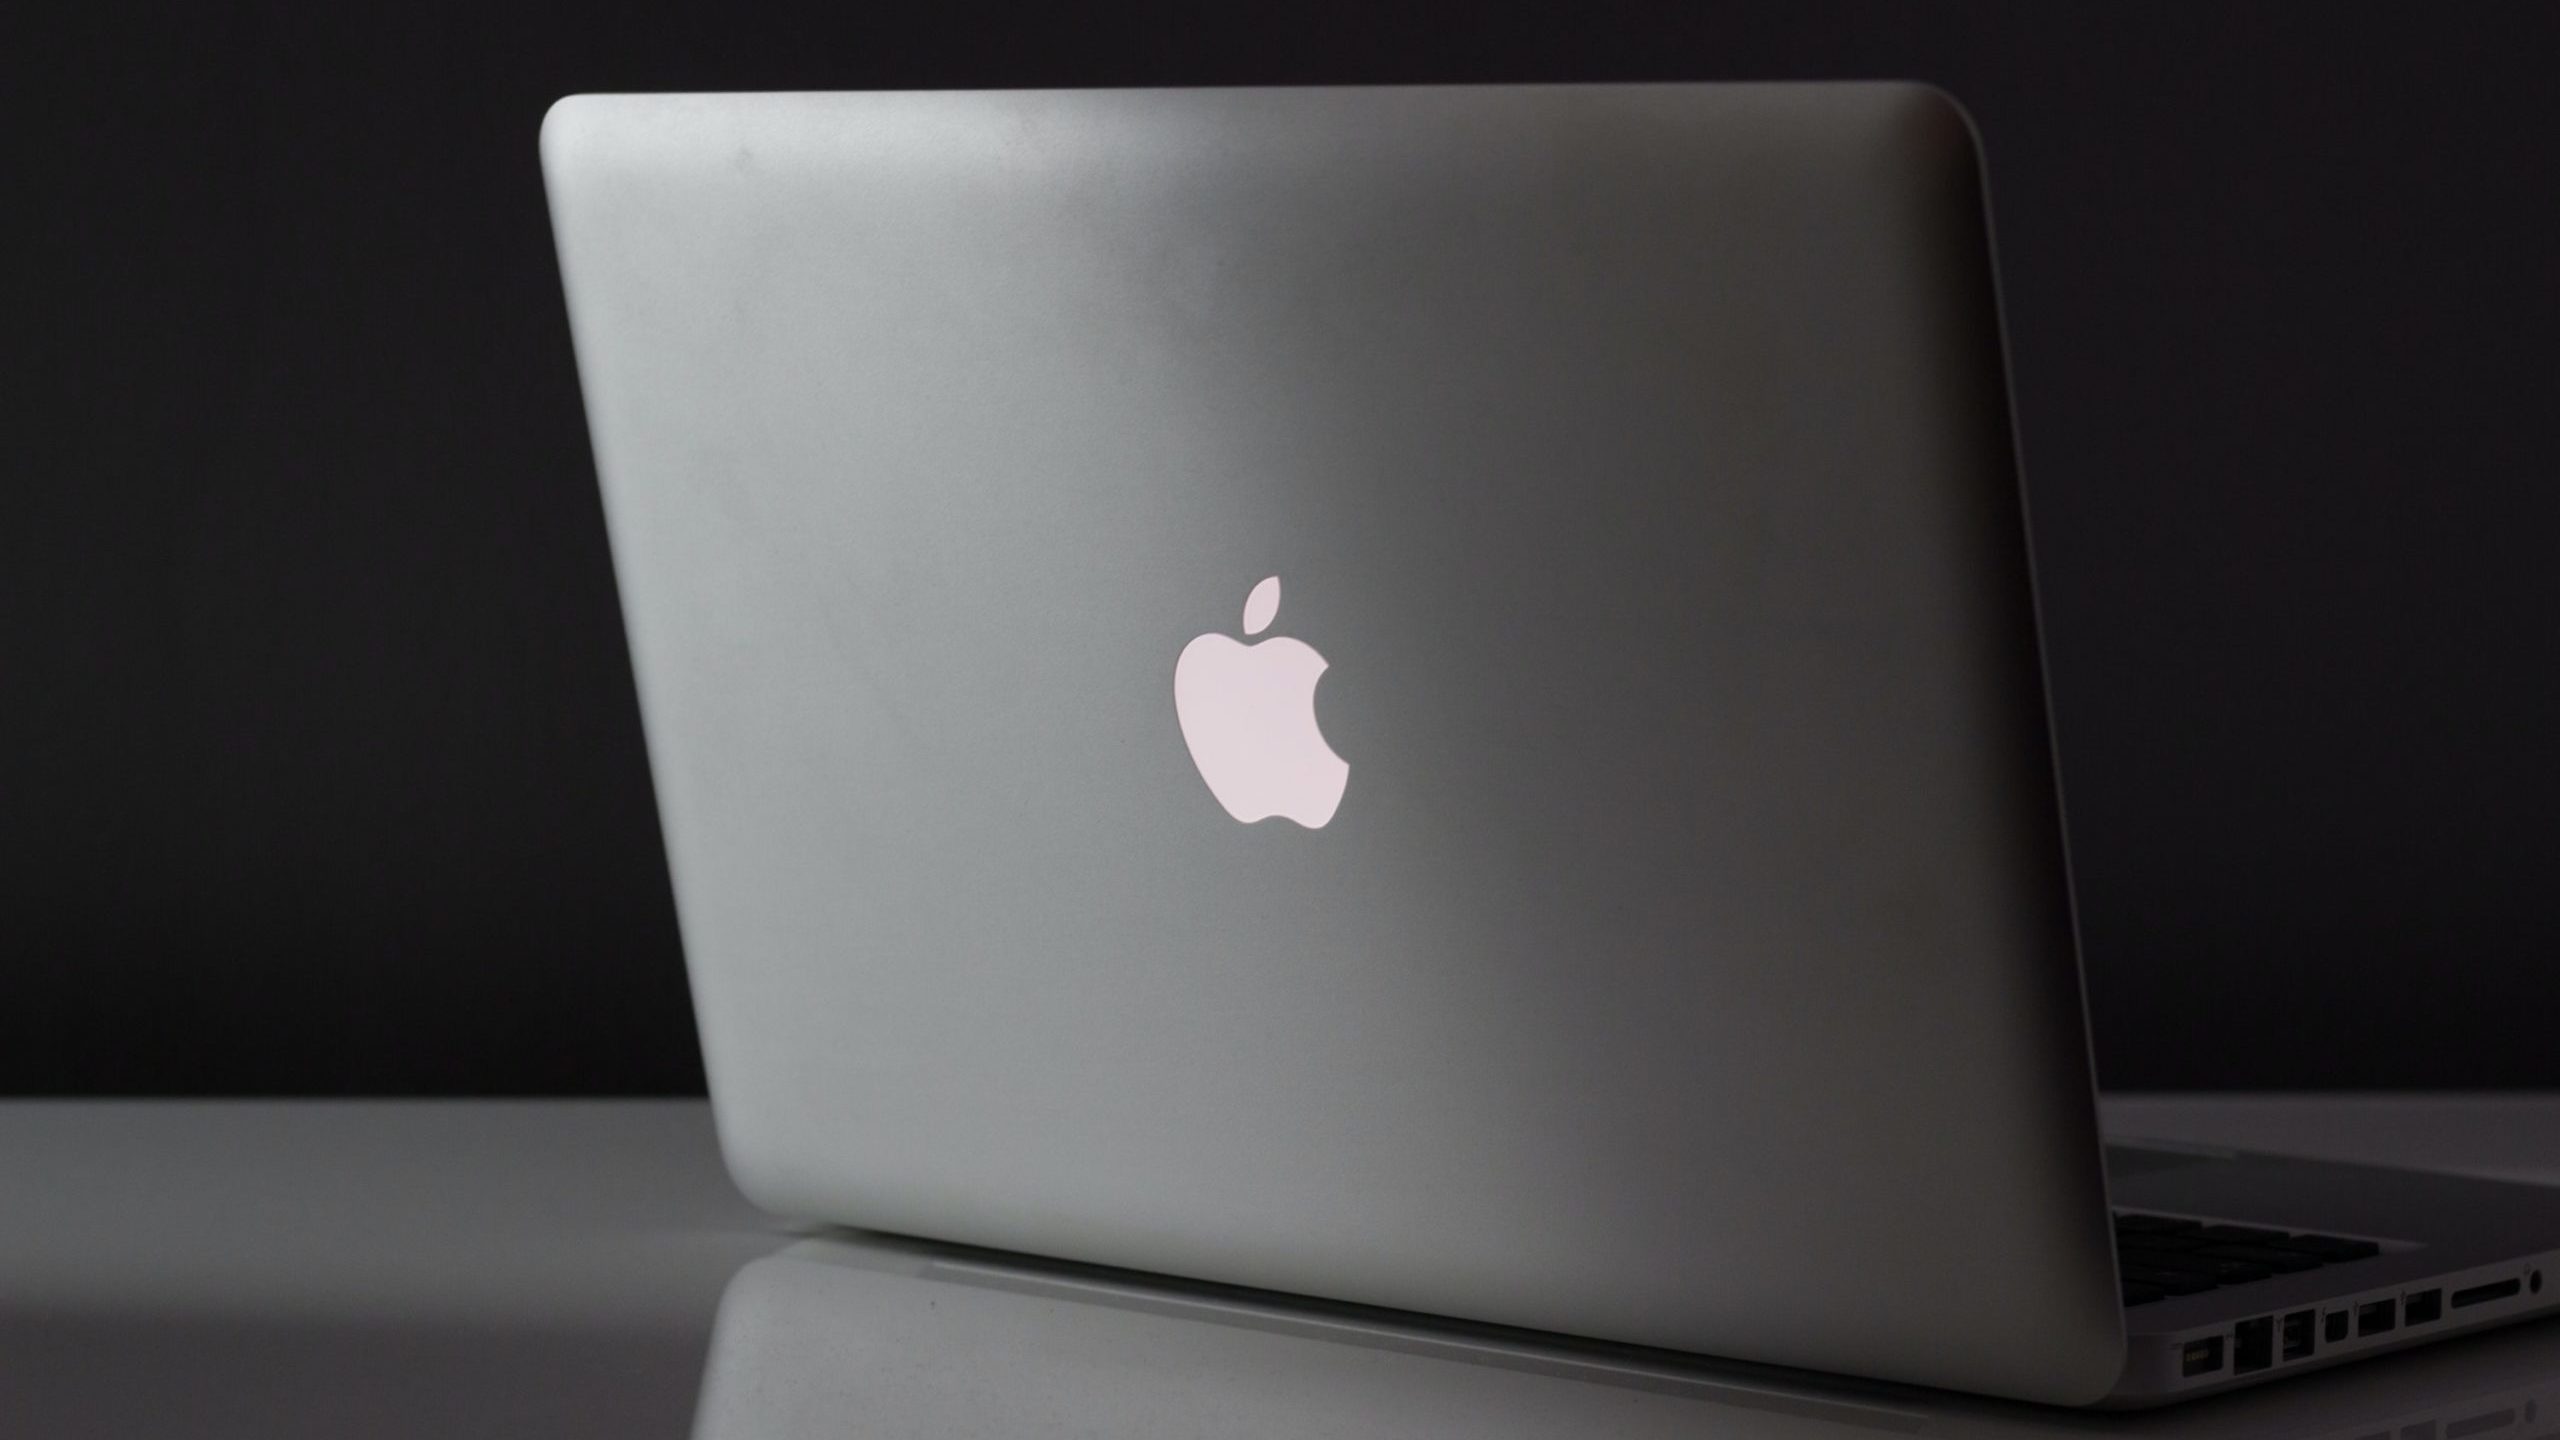 Apple MacBook Pro. Imagem: Marcin Nowak (Unsplash)